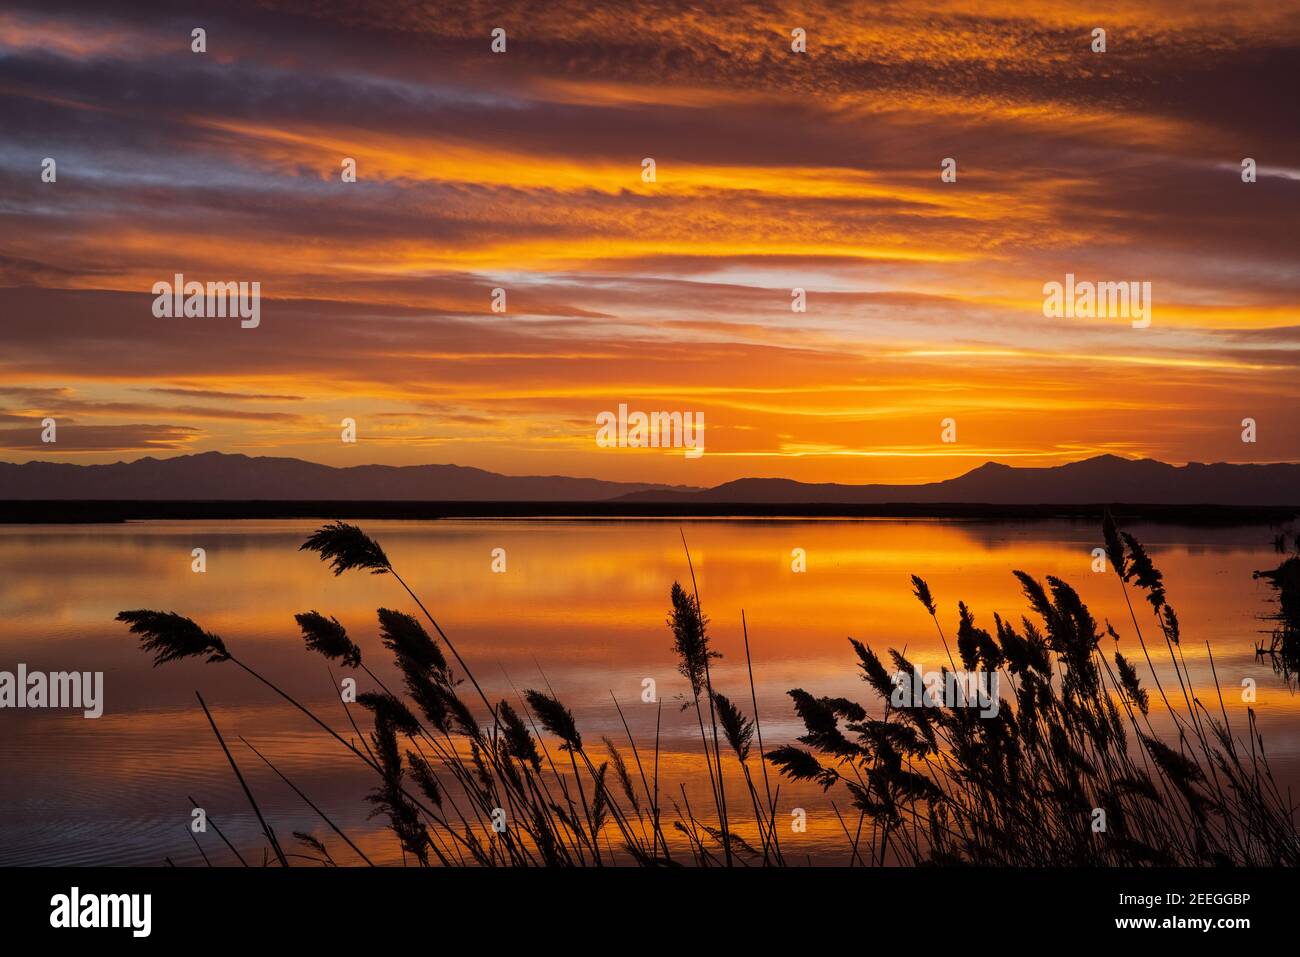 Das Nachglühen des Sonnenuntergangs erhellt die Wolken und das Wasser im Wasservogelmanagement-Gebiet Farmington Bay, Farmington, Davis County, Utah, USA. Stockfoto